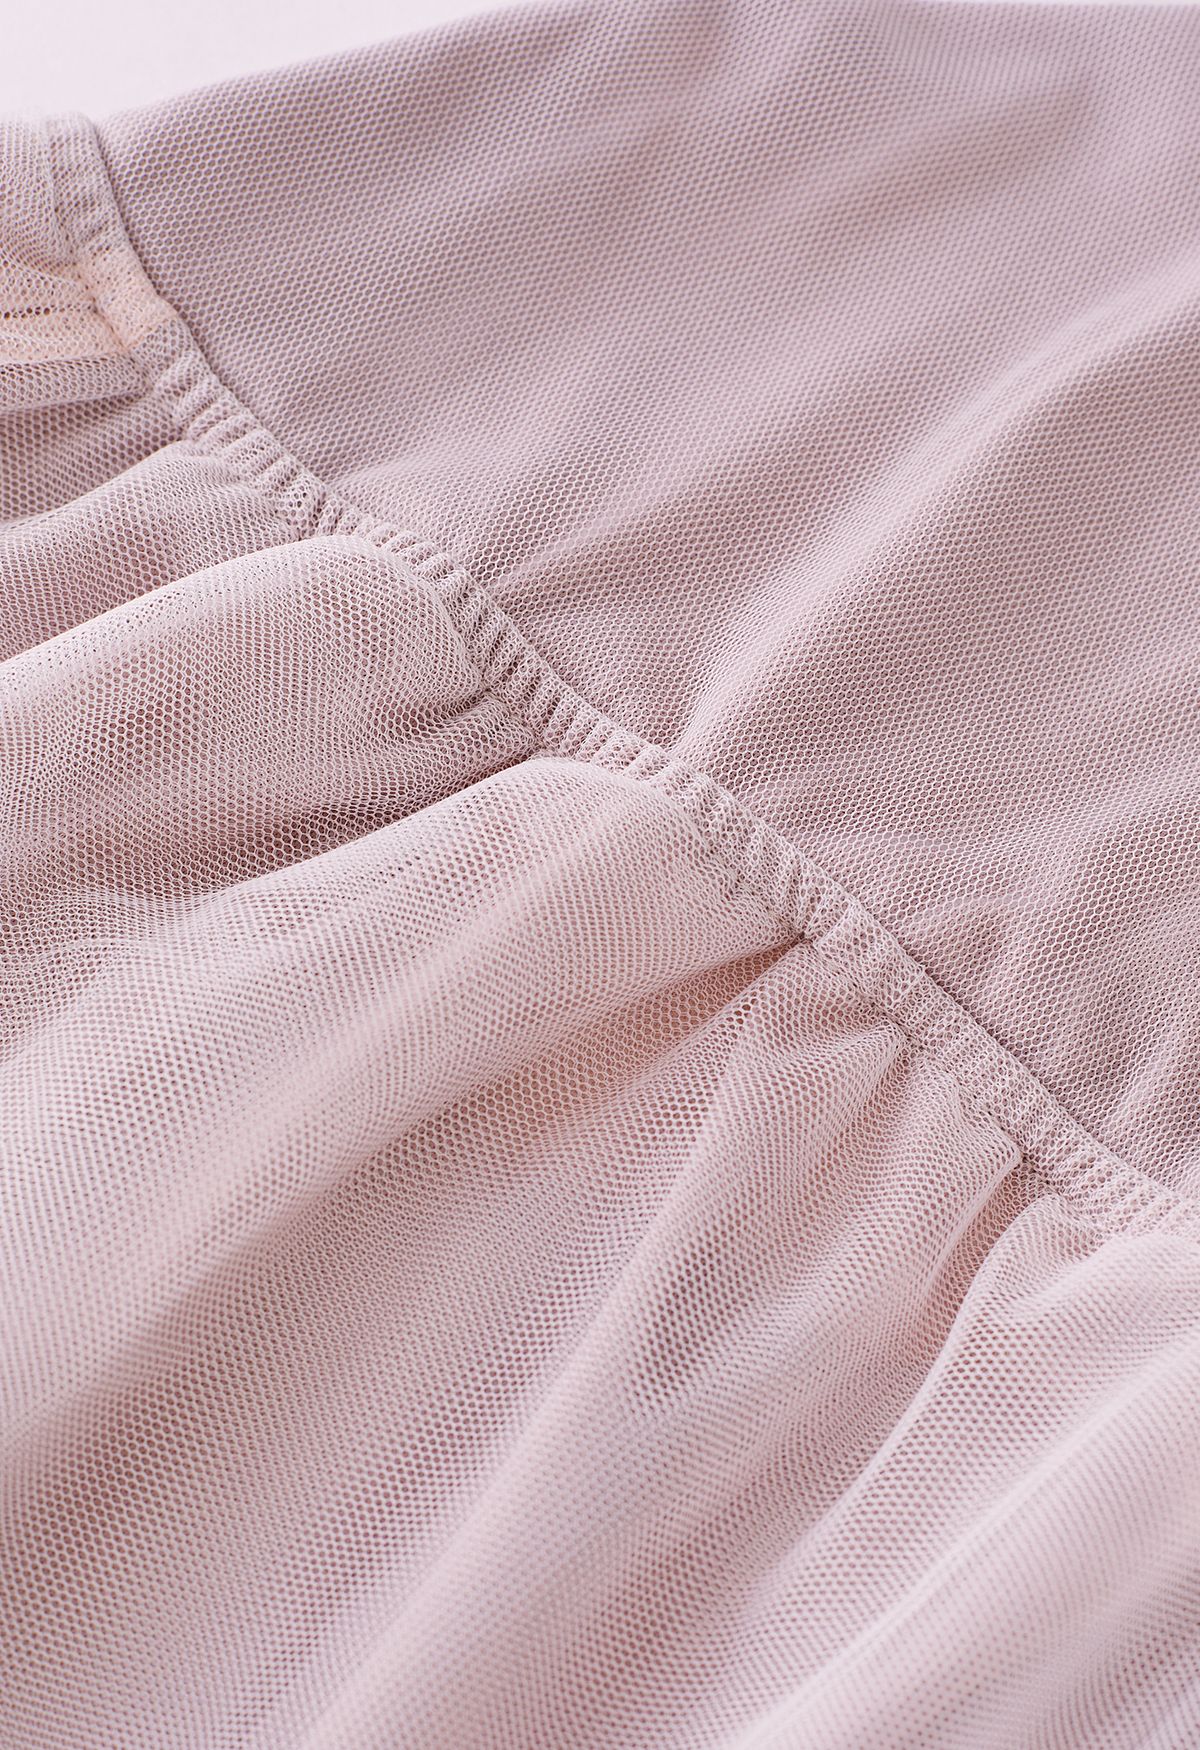 فستان من التول الشبكي بتصميم ملفوف من الخلف من Crisscross باللون الوردي